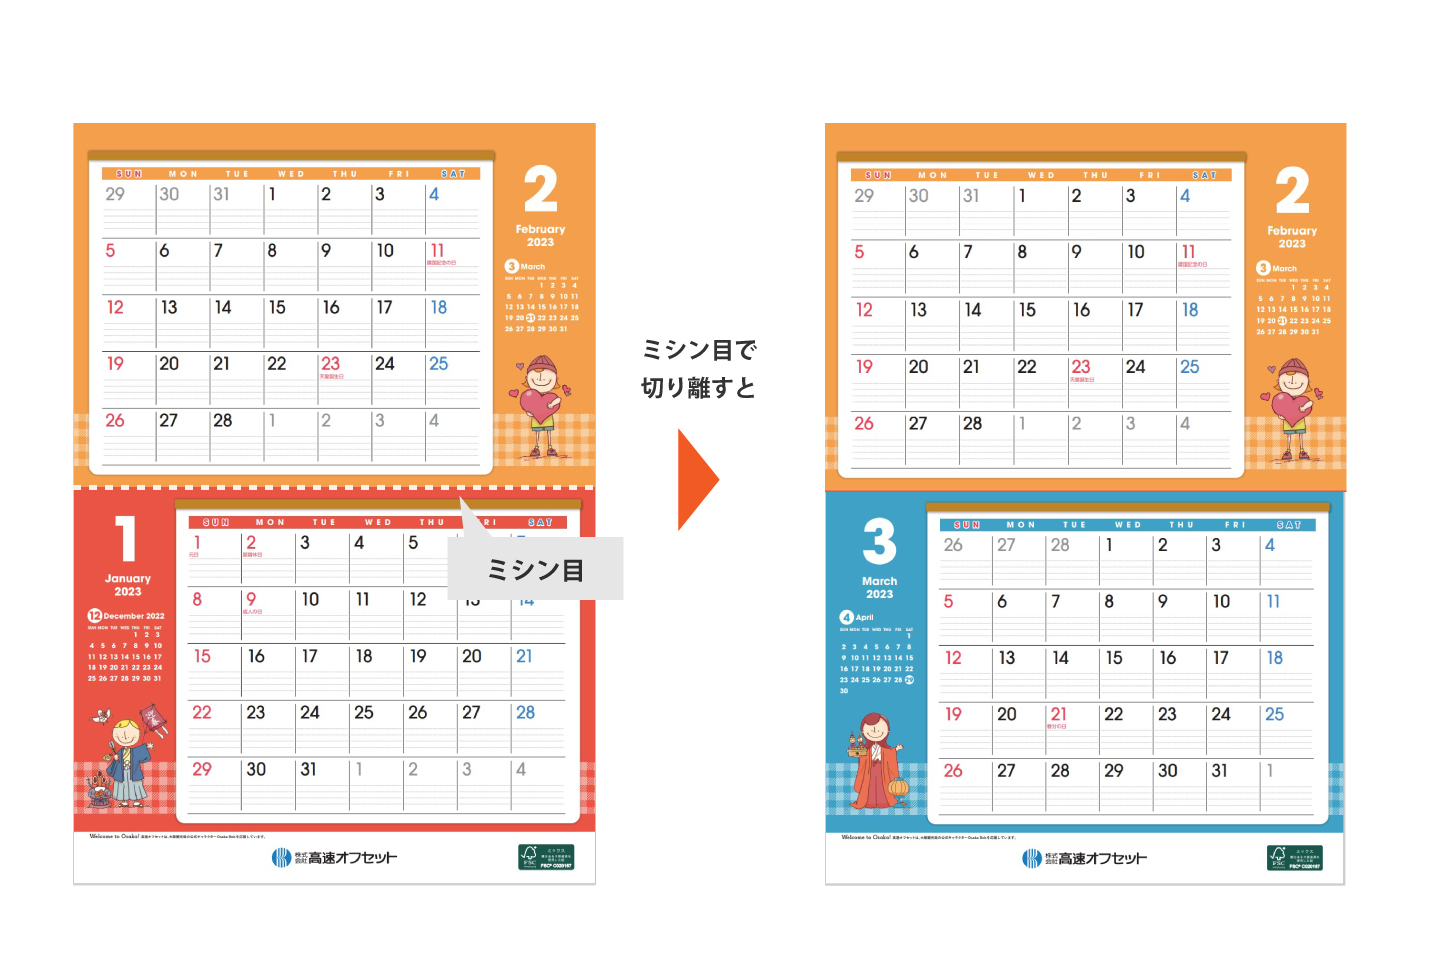 高速オフセットカレンダー2023 OsakaBob壁掛けカレンダー ミシン目説明